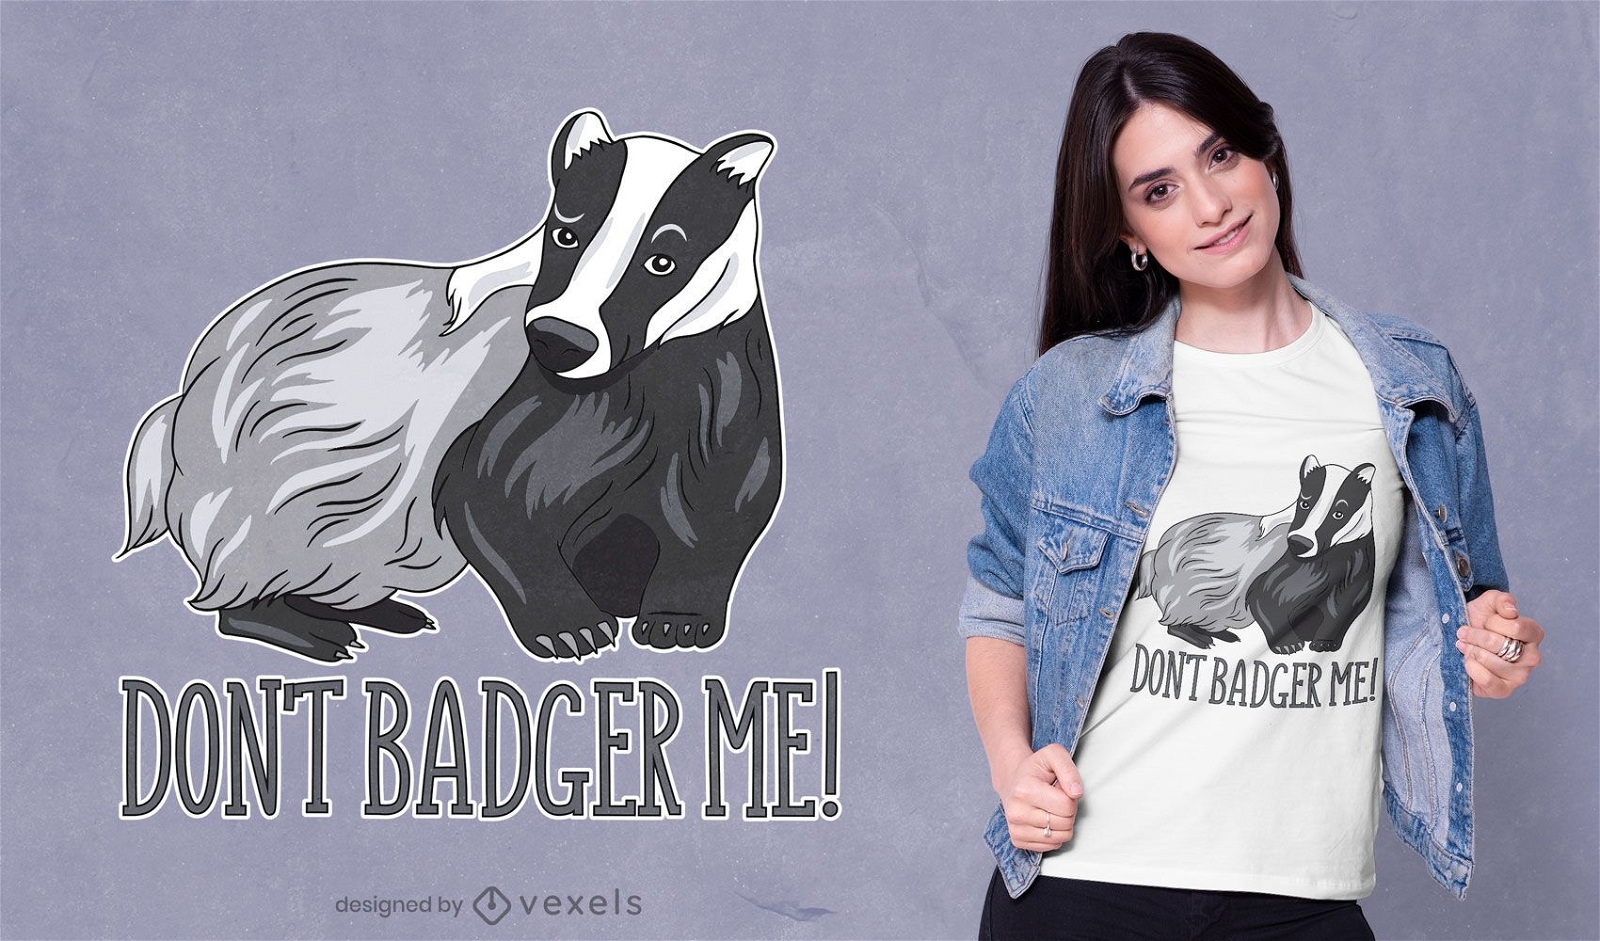 Don't badger me t-shirt design